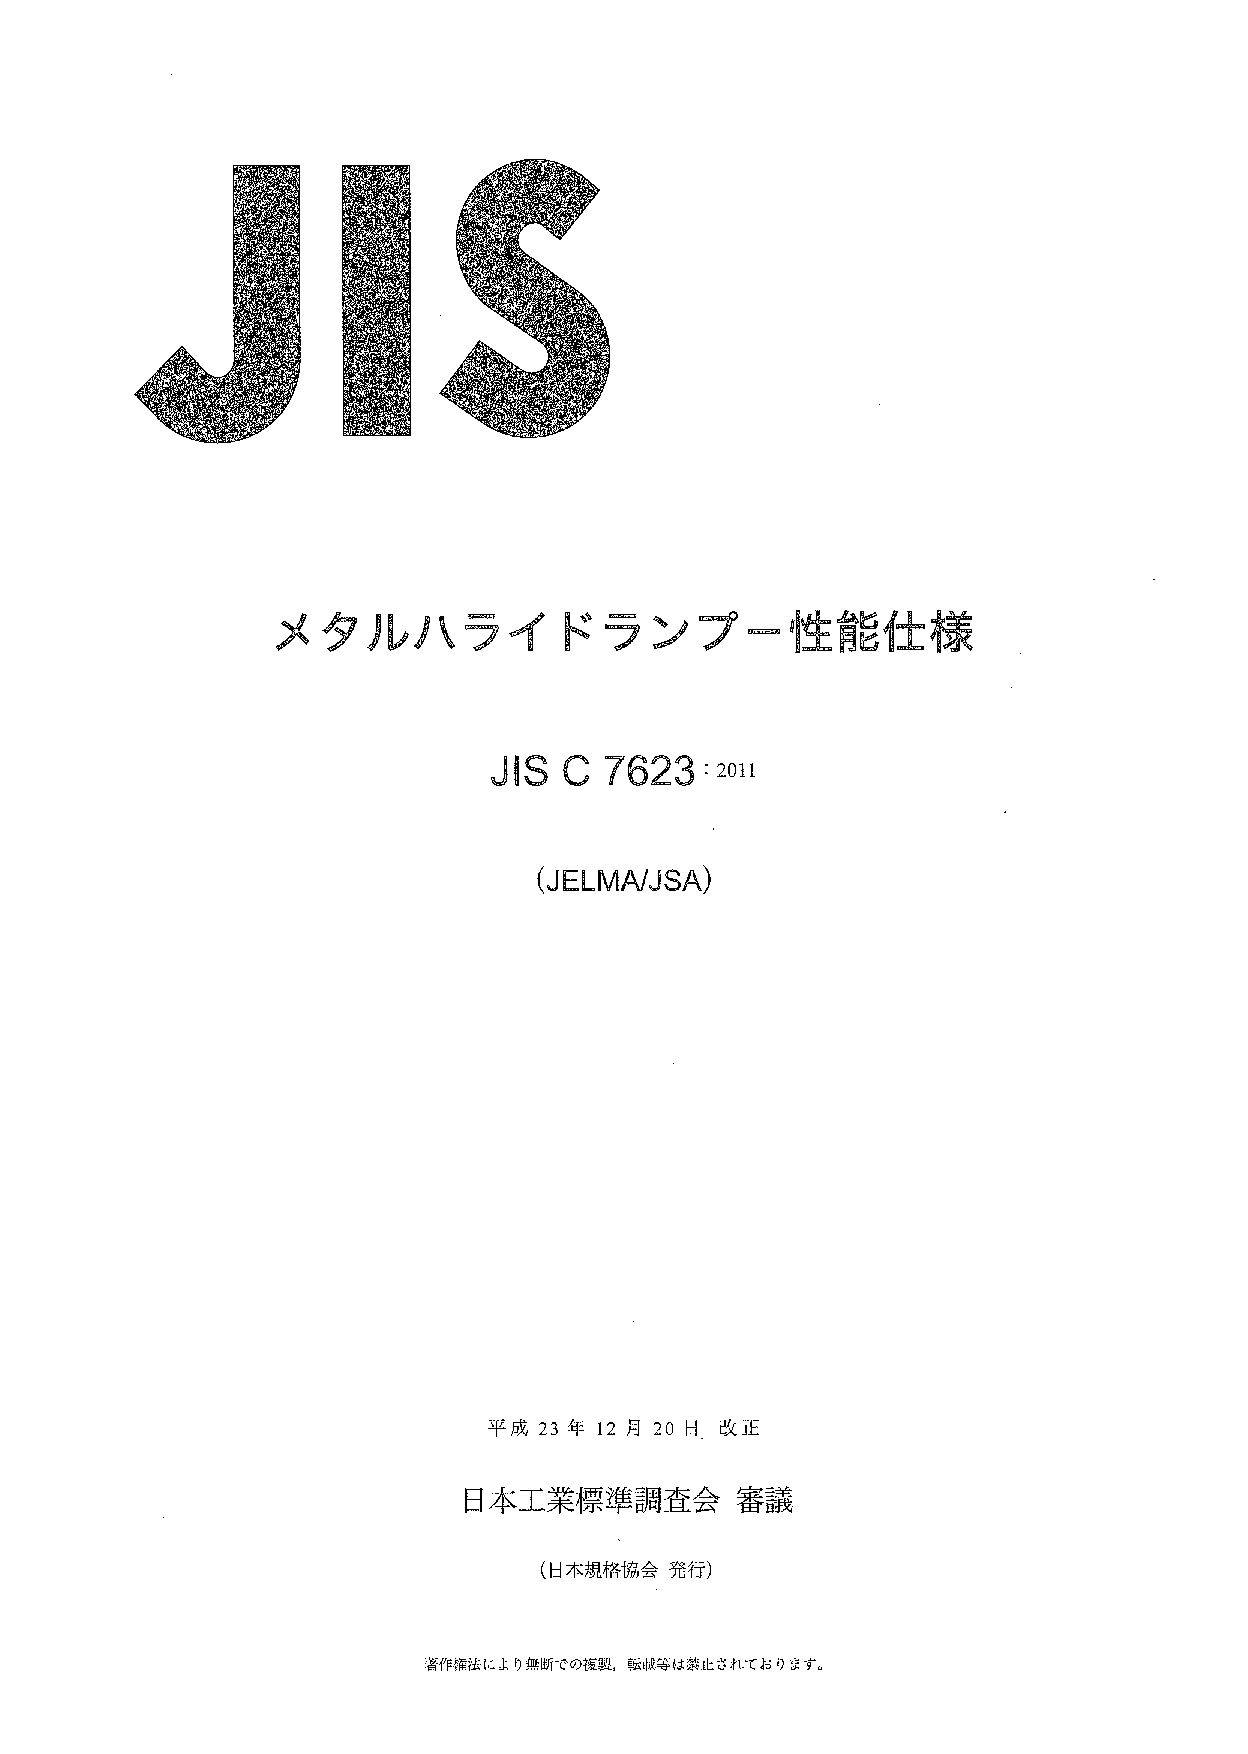 JIS C 7623:2011封面图